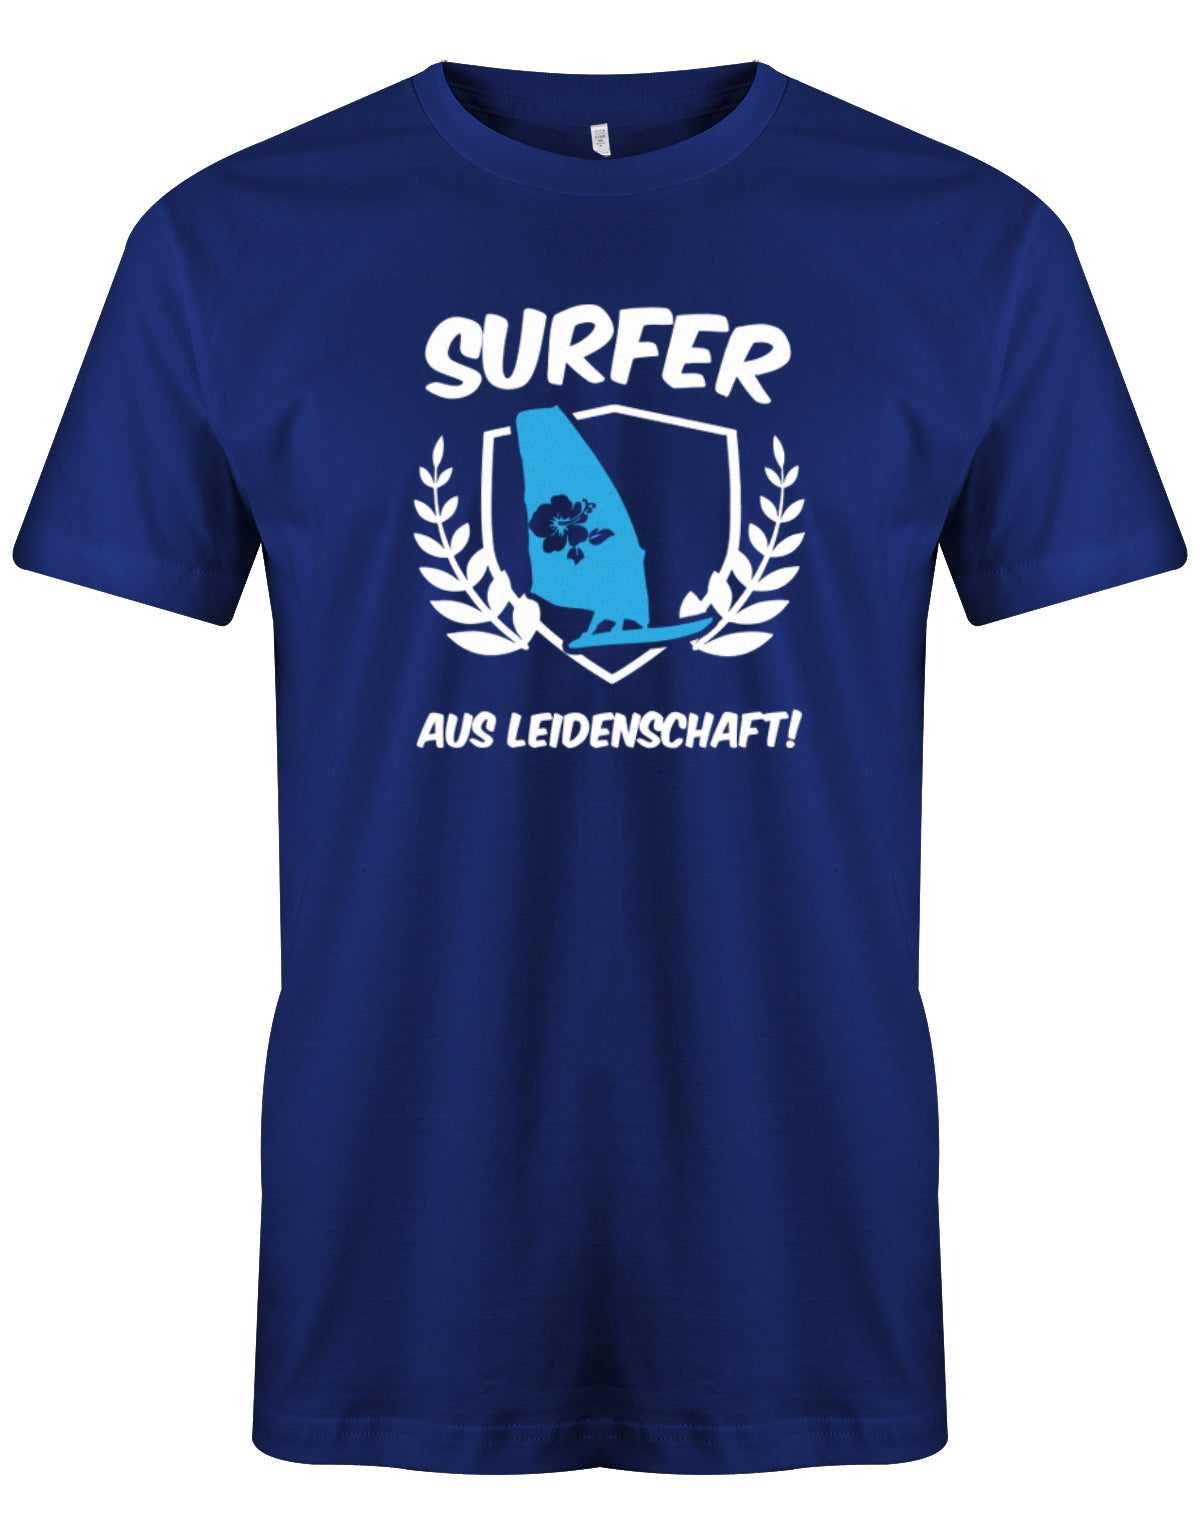 Das lustige Surfer t-shirt bedruckt mit "Surfer Aus Leidenschaft mit Surfer und Hibiskus Segel. Royalblau